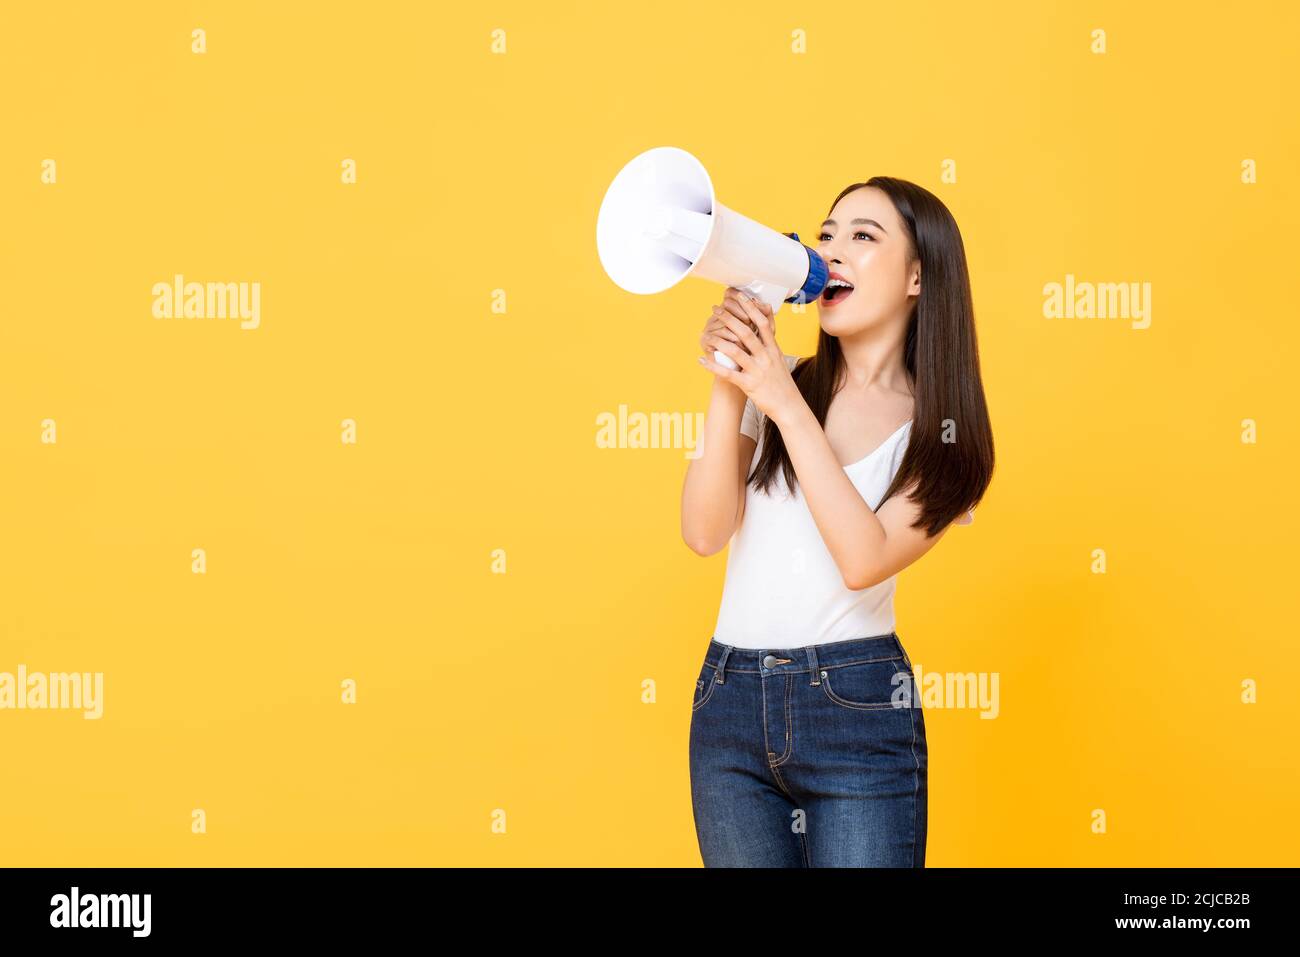 Portrait von lächelnd fröhlich junge hübsche asiatische Frau hält Megaphon Ankündigung in isolierten Studio gelben Hintergrund Stockfoto